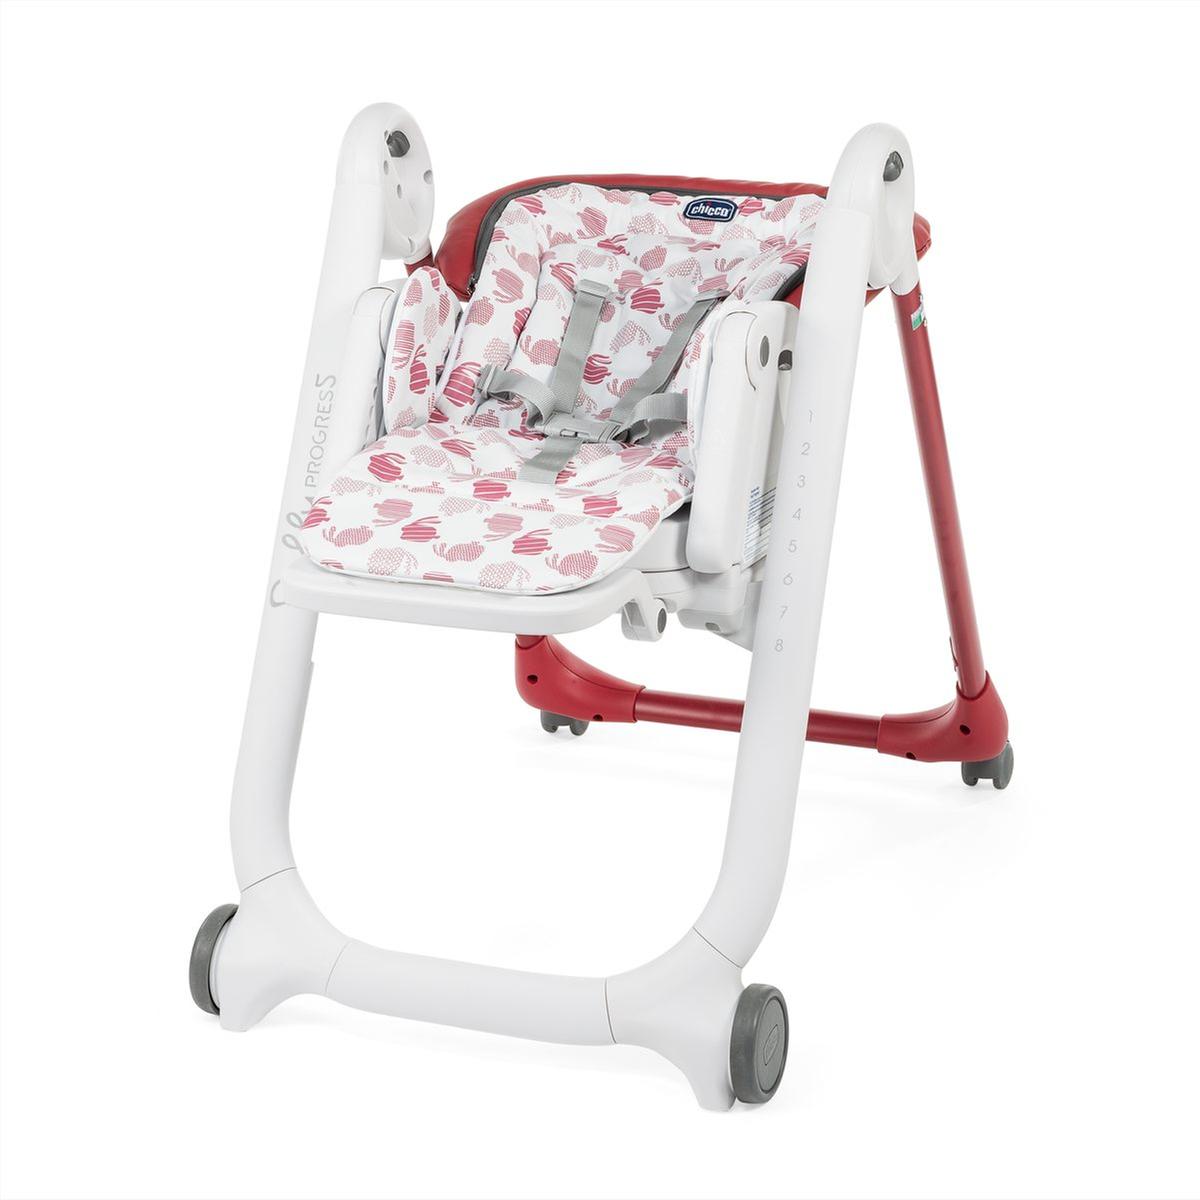 Chicco - Cadeira de Papa Evolutiva Polly Progres5 Red | Cadeiras portáteis  | Loja de brinquedos e videojogos Online Toysrus